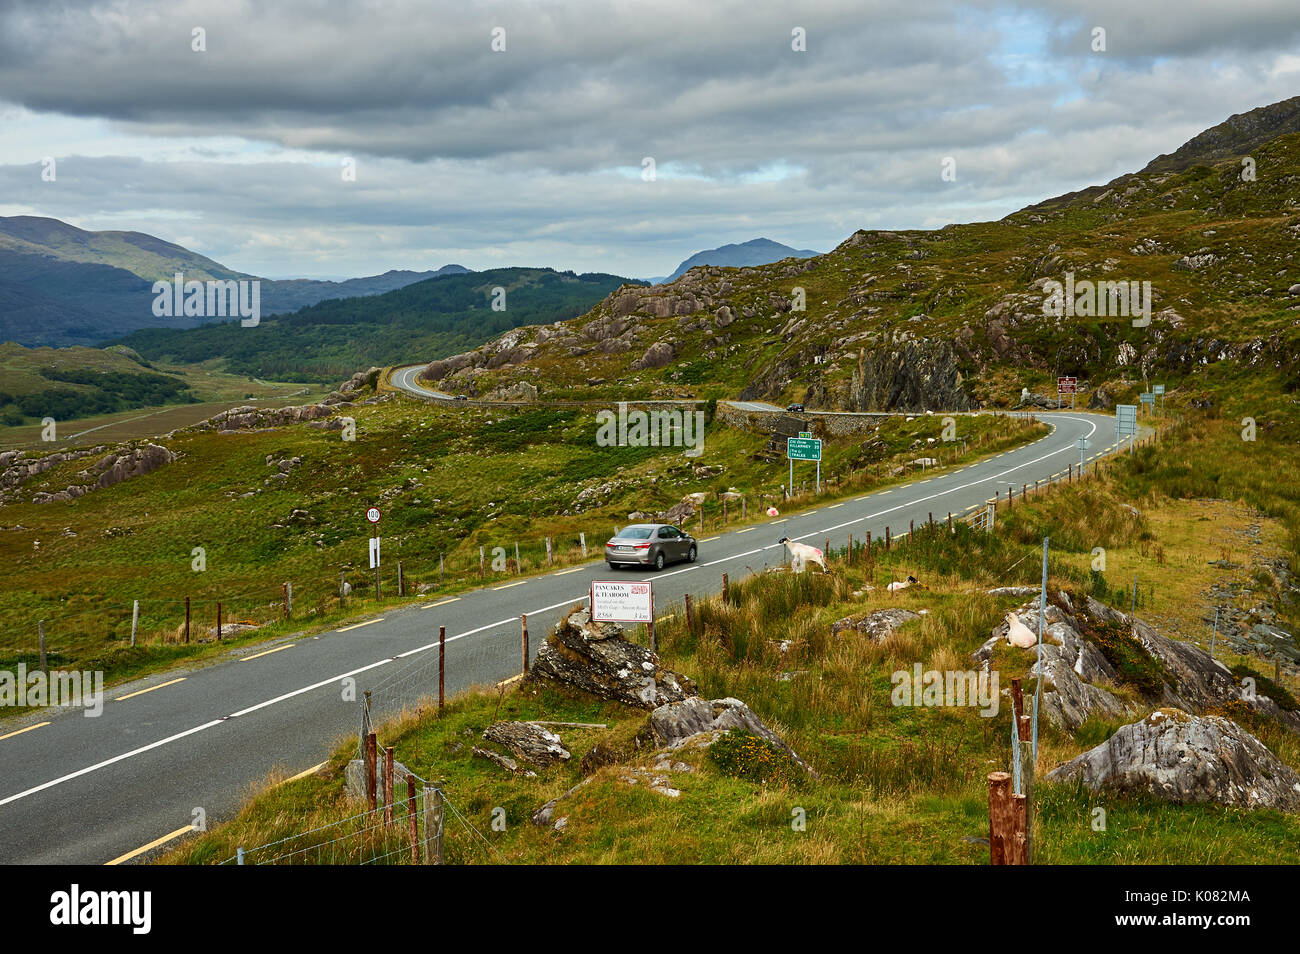 Molls Gap am Ring of Kerry Route im County Kerry, Irland, ist eine Lücke in der kargen Landschaft, in der sich die Straße durch die Kenmare fällt. Stockfoto